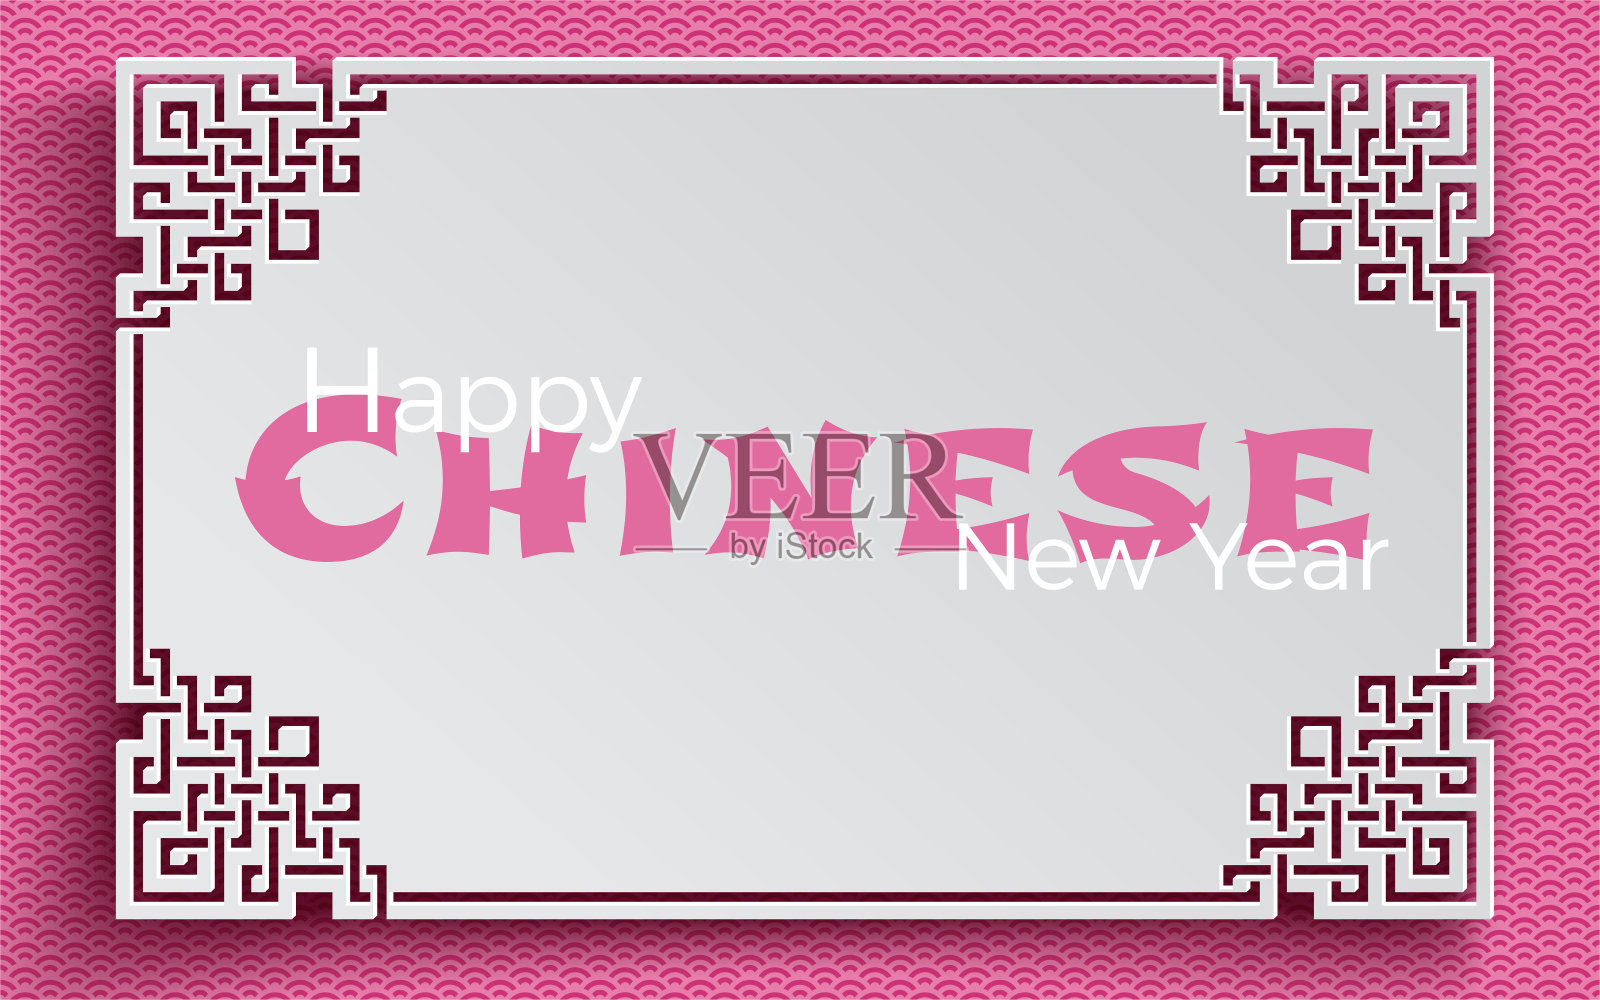 东方框架装饰在粉红色的图案背景为中国新年贺卡，横幅，海报，剪纸风格。文字春节快乐，矢量插画图片素材